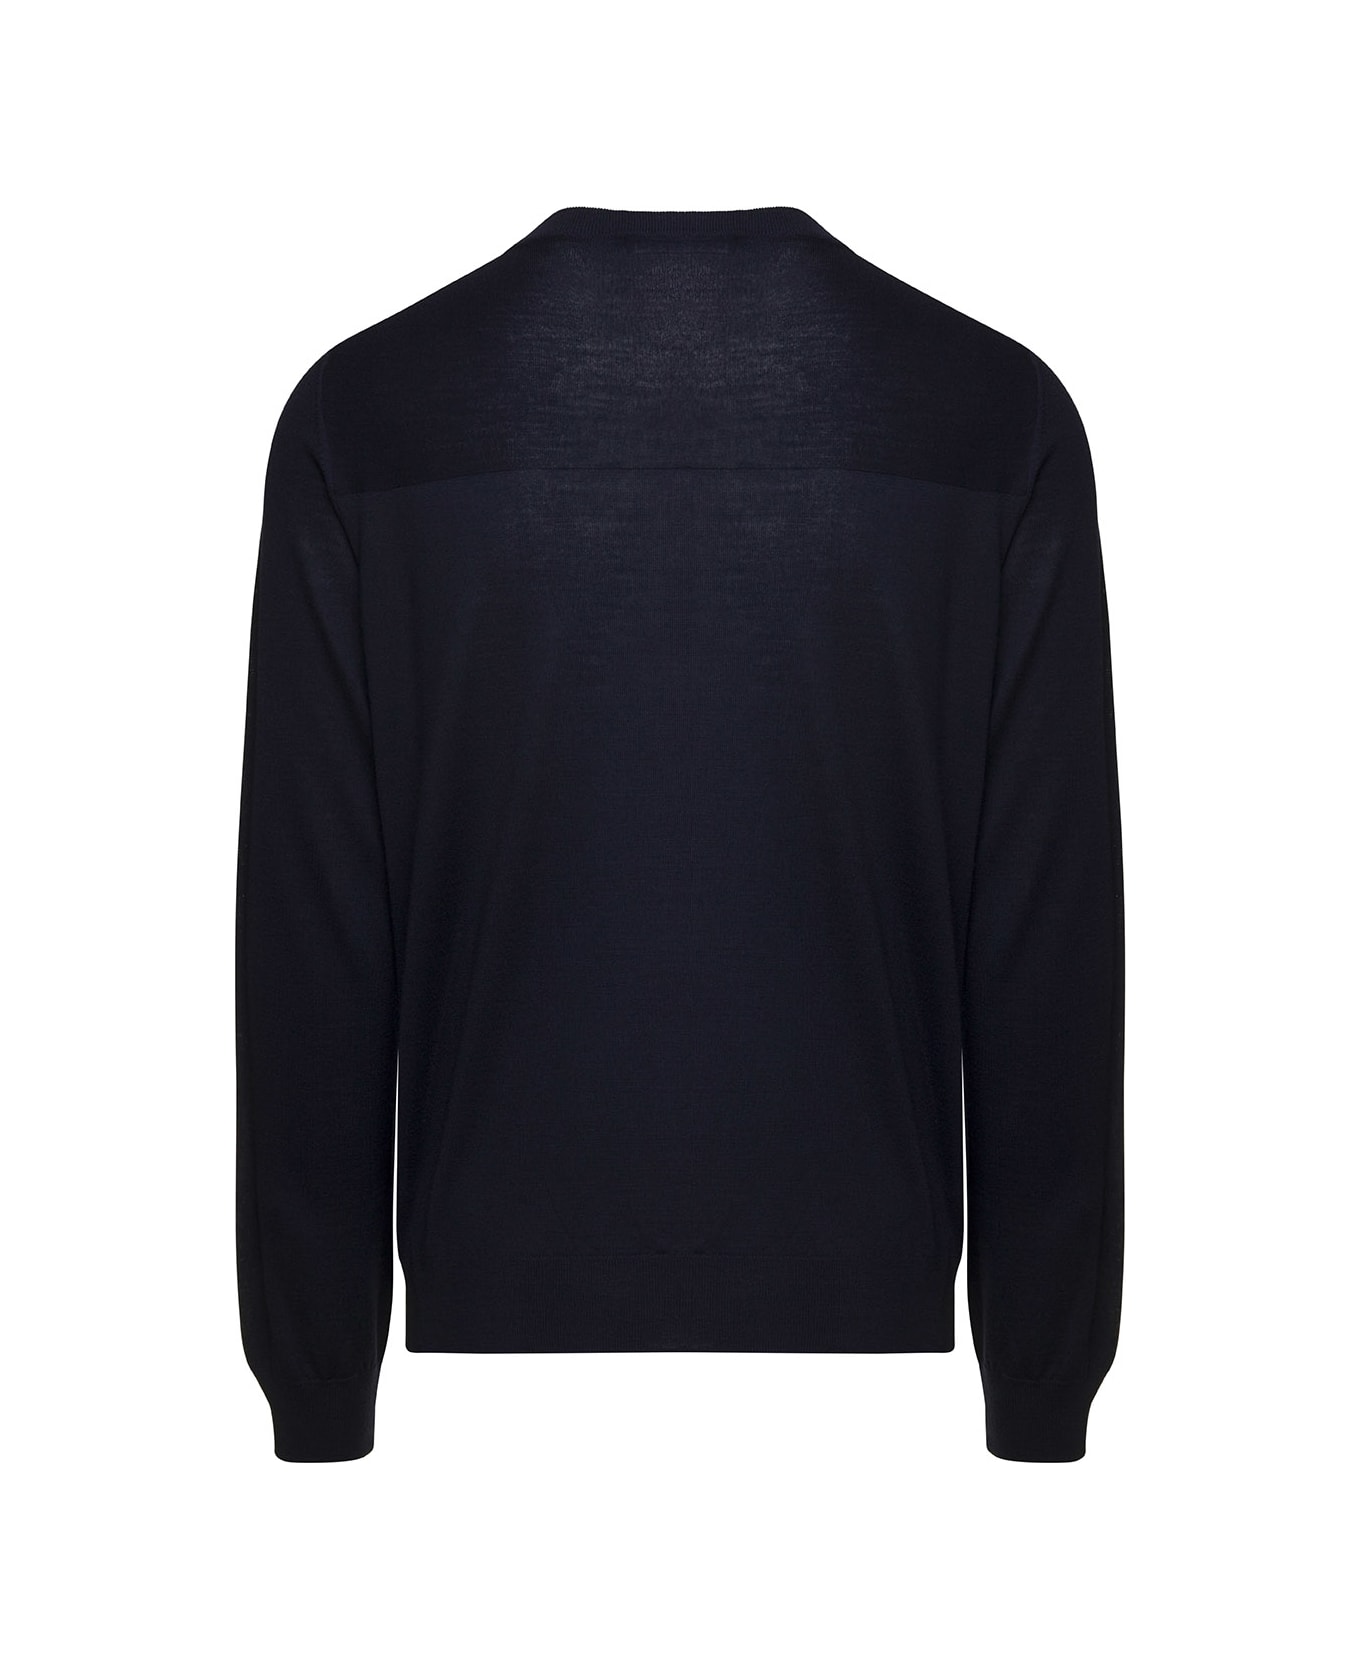 Jil Sander Blue Crewneck Sweater With Long Sleeves In Wool Man - Blu